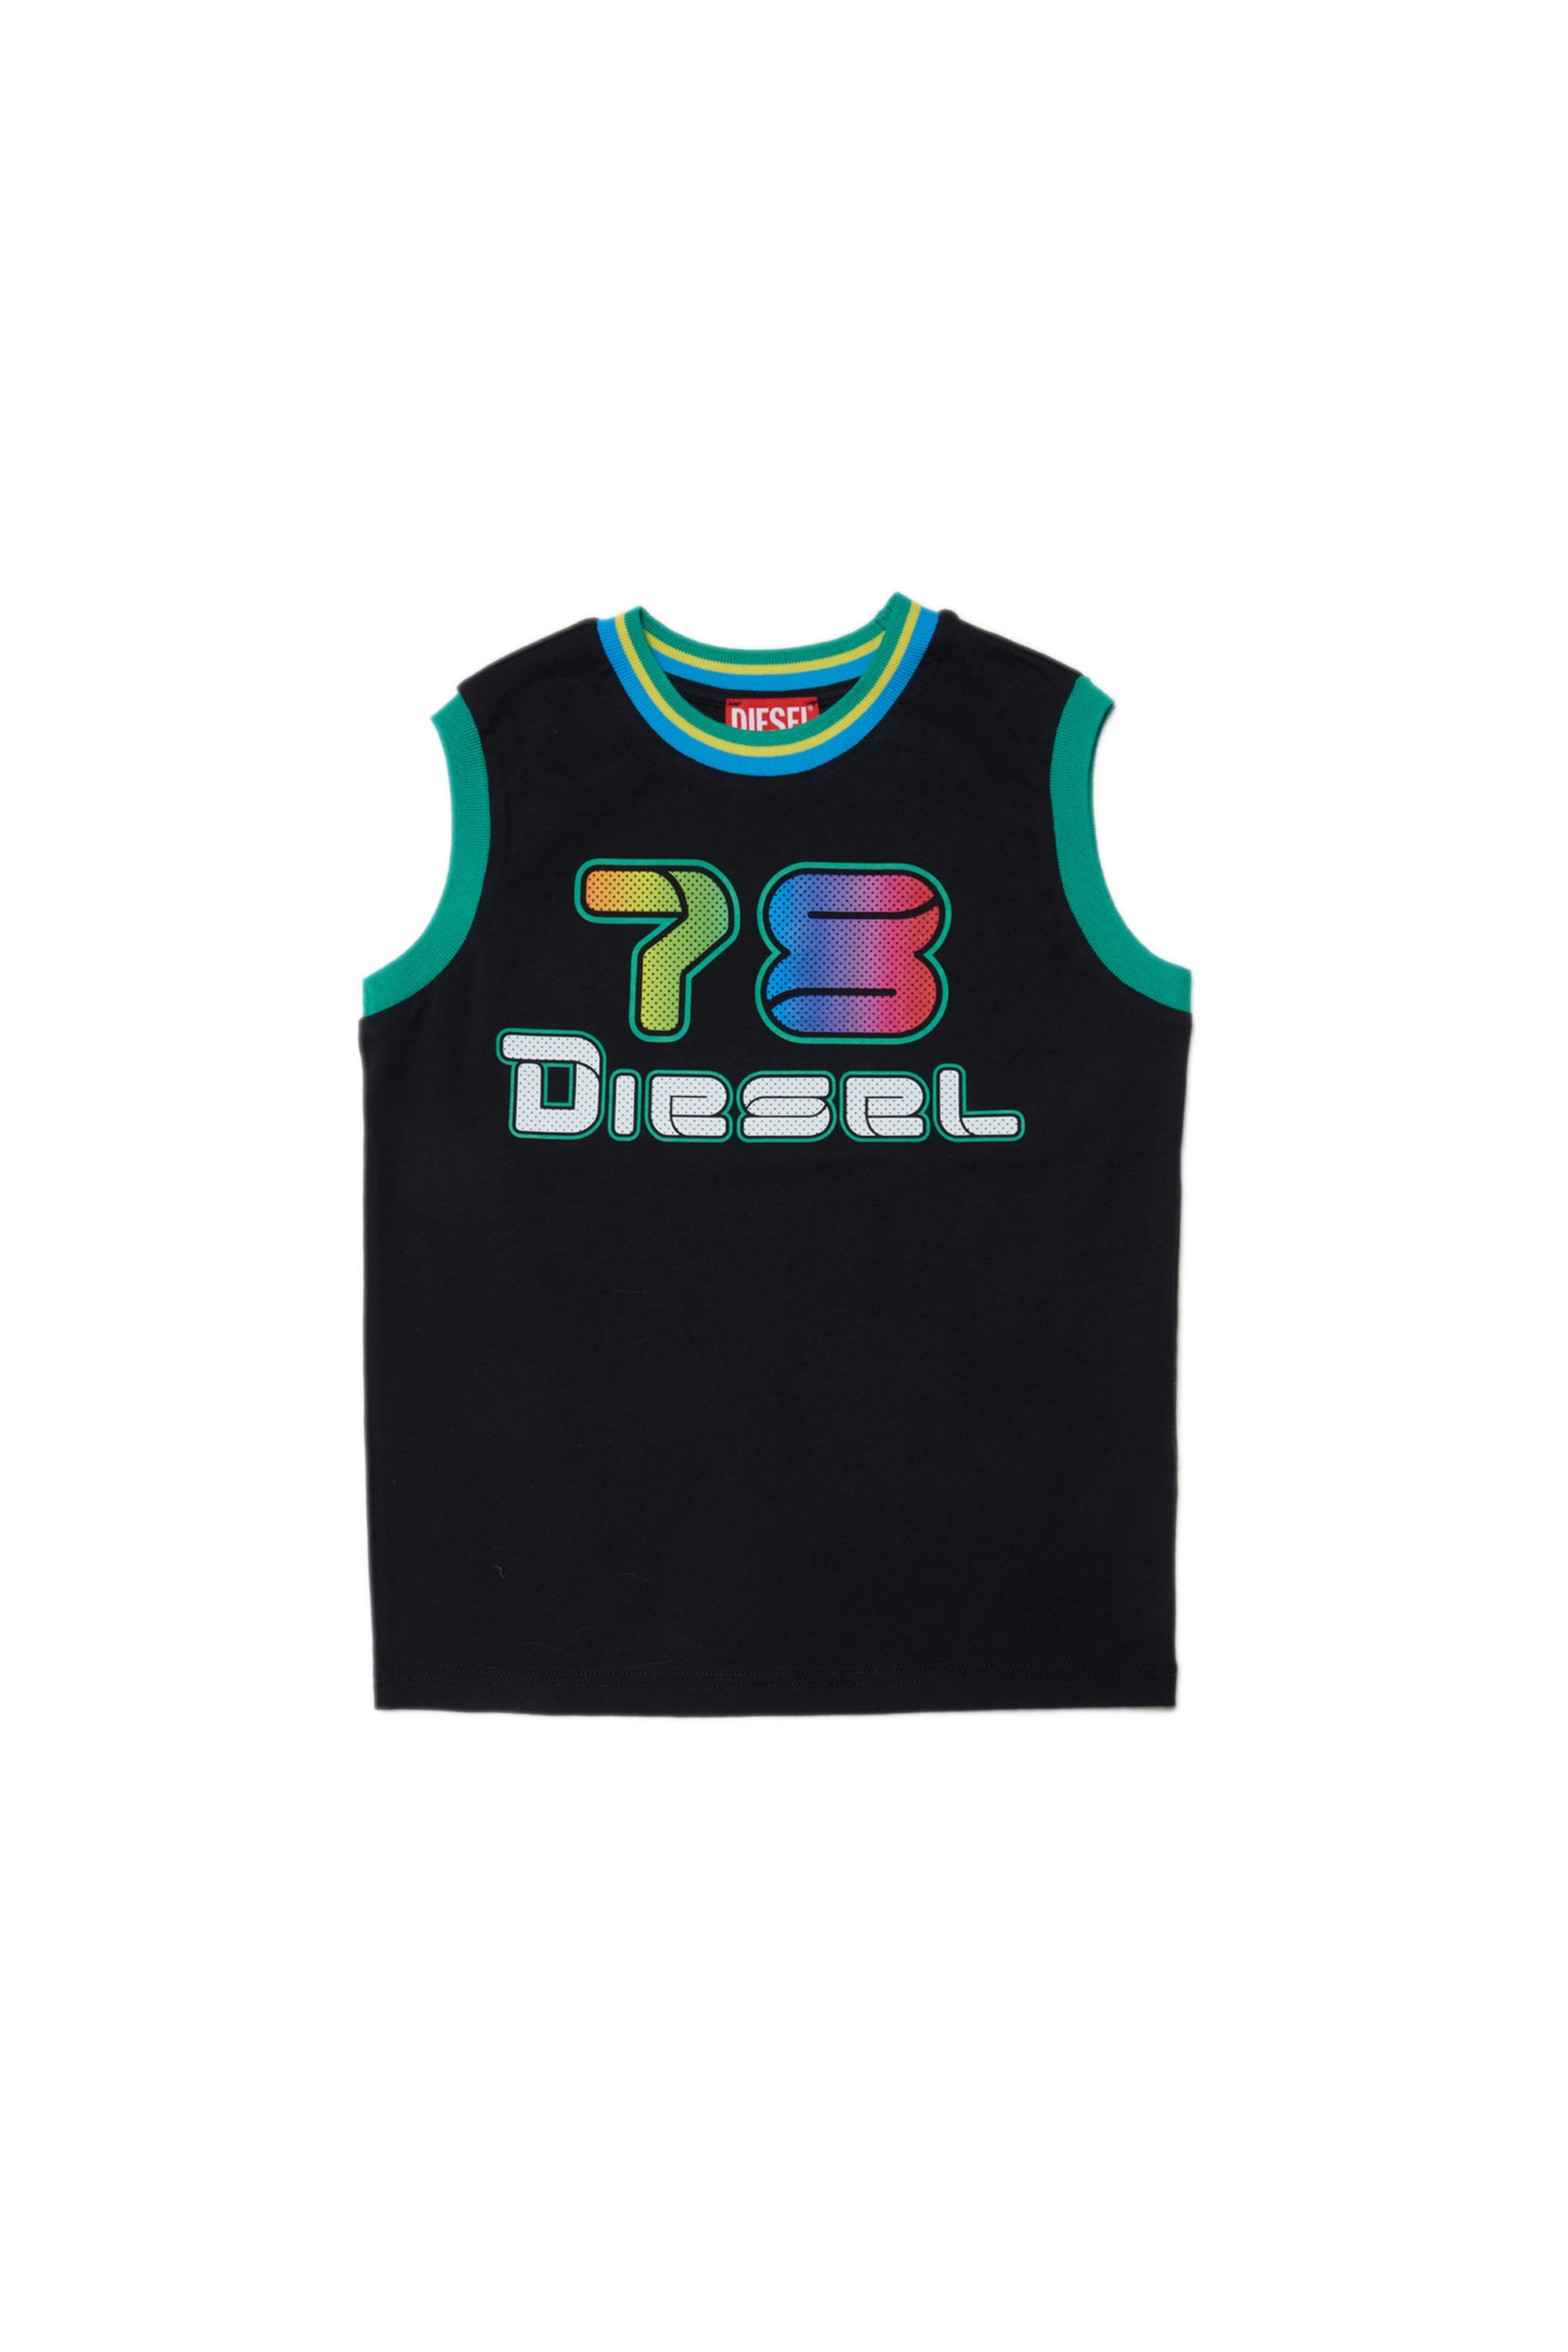 Diesel - TEOLD, Black - Image 1